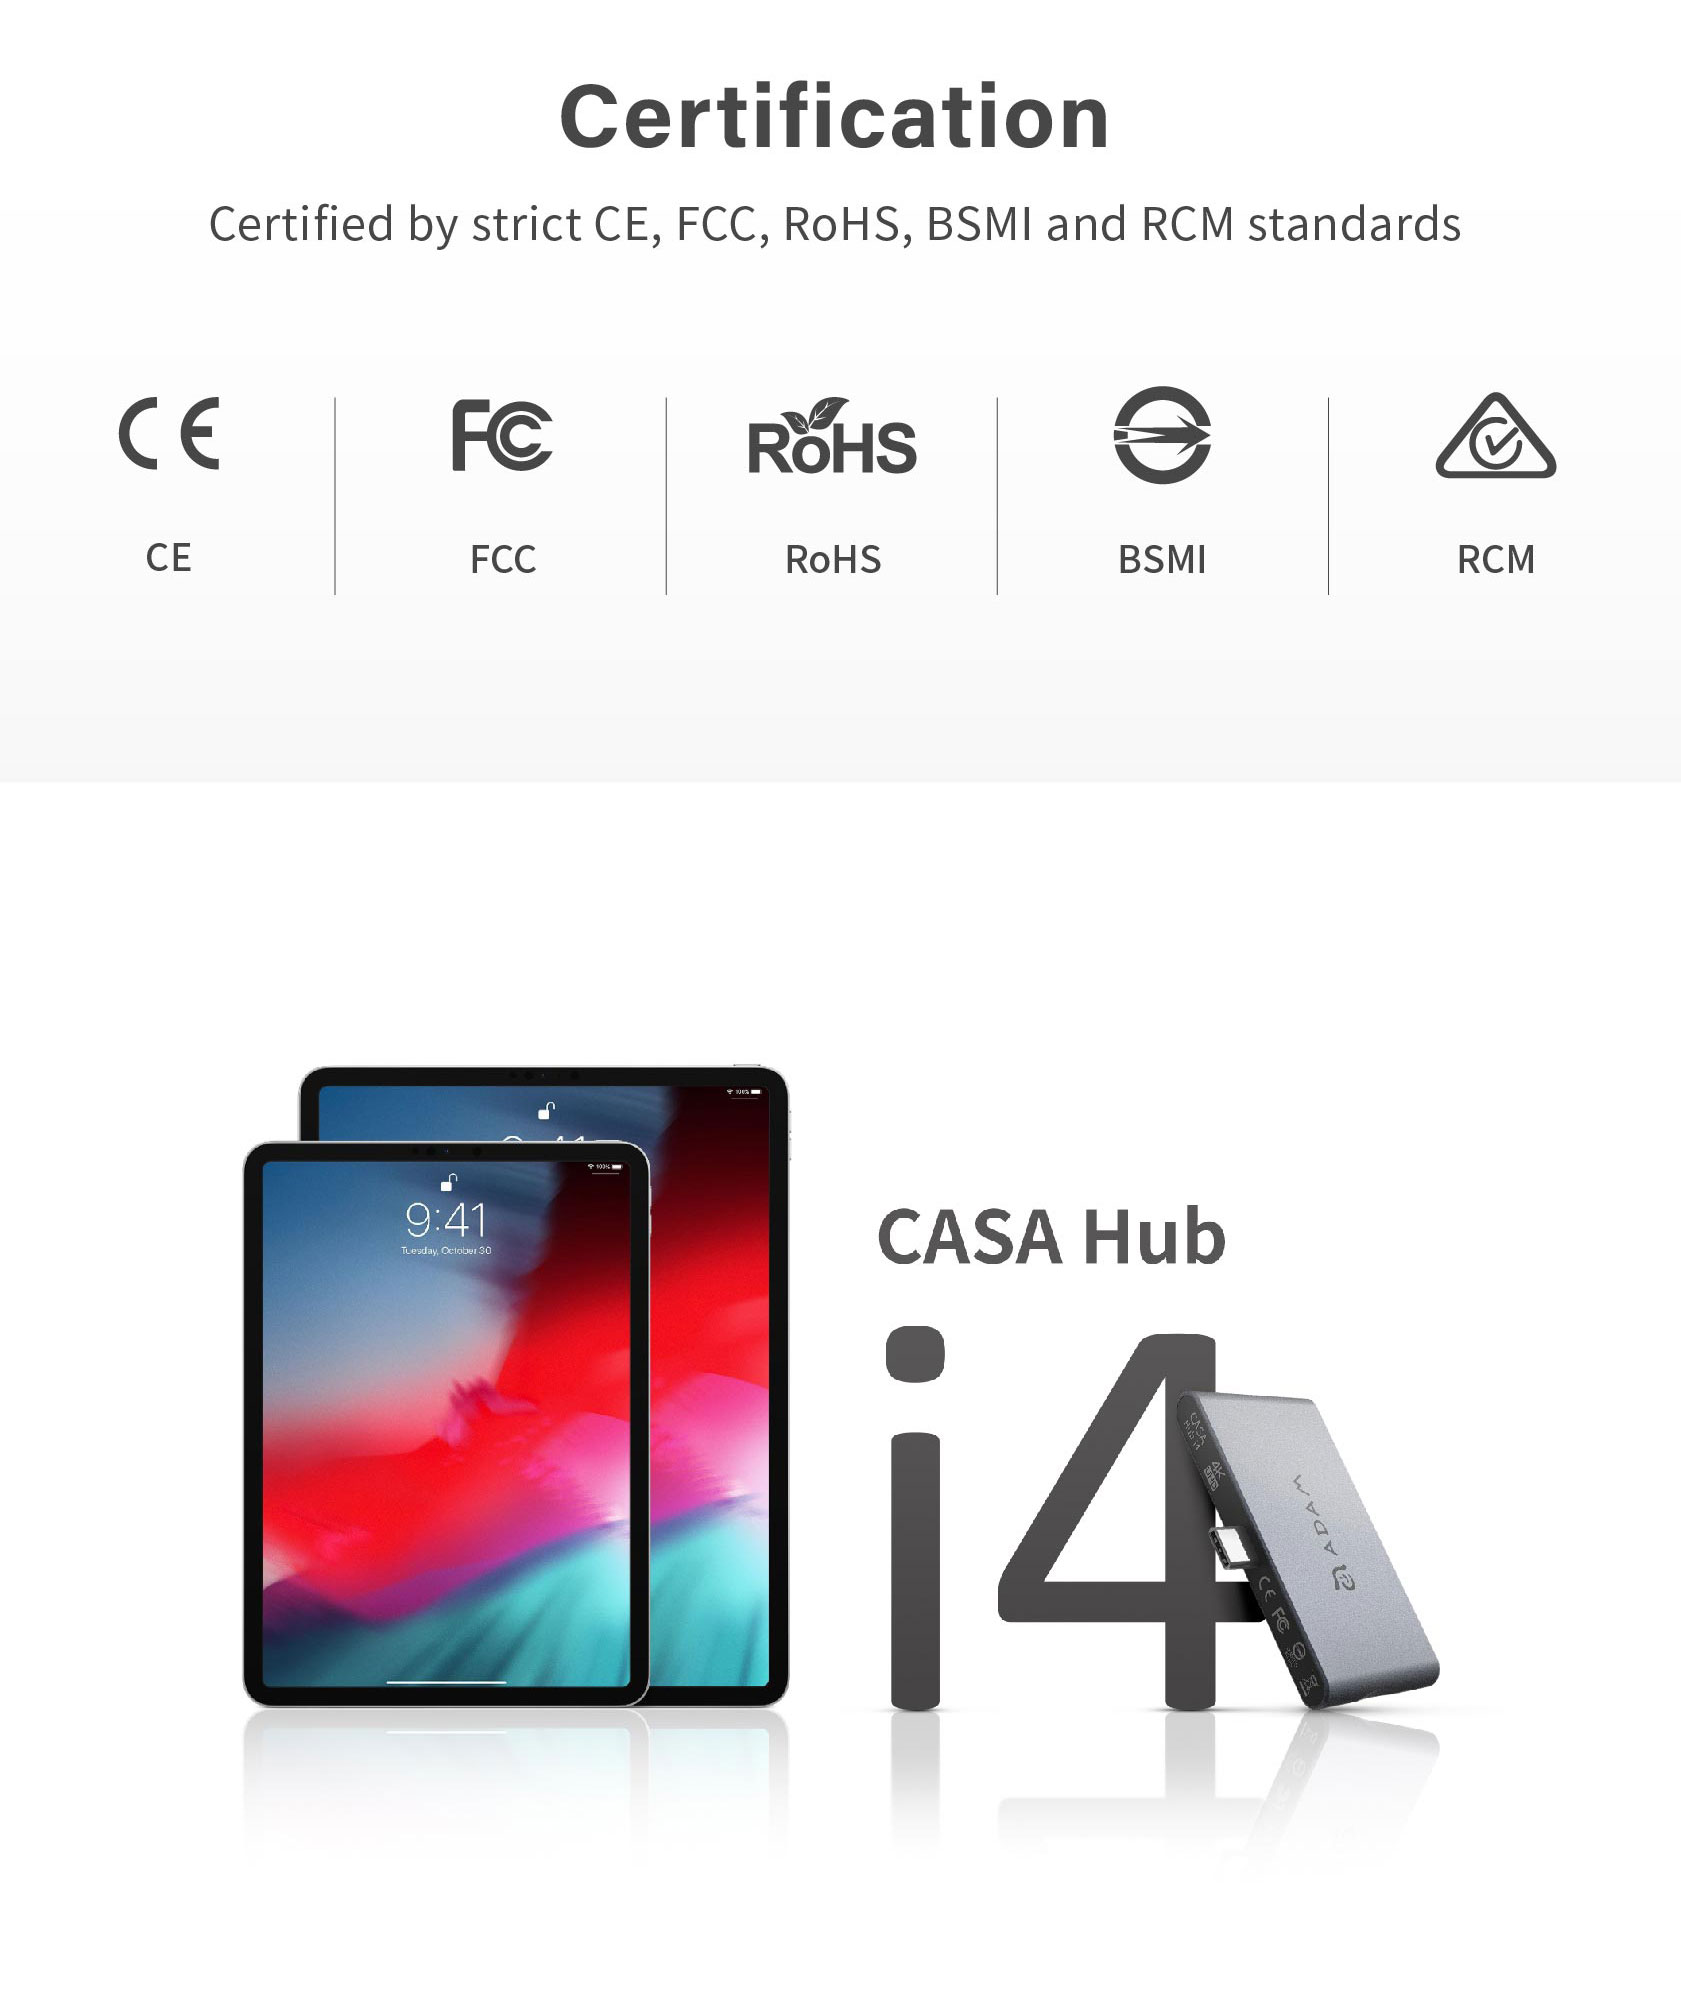 CASA Hub i4 USB 3.1 USB Type C USB C 4 Port Hub for iPad Pro 9